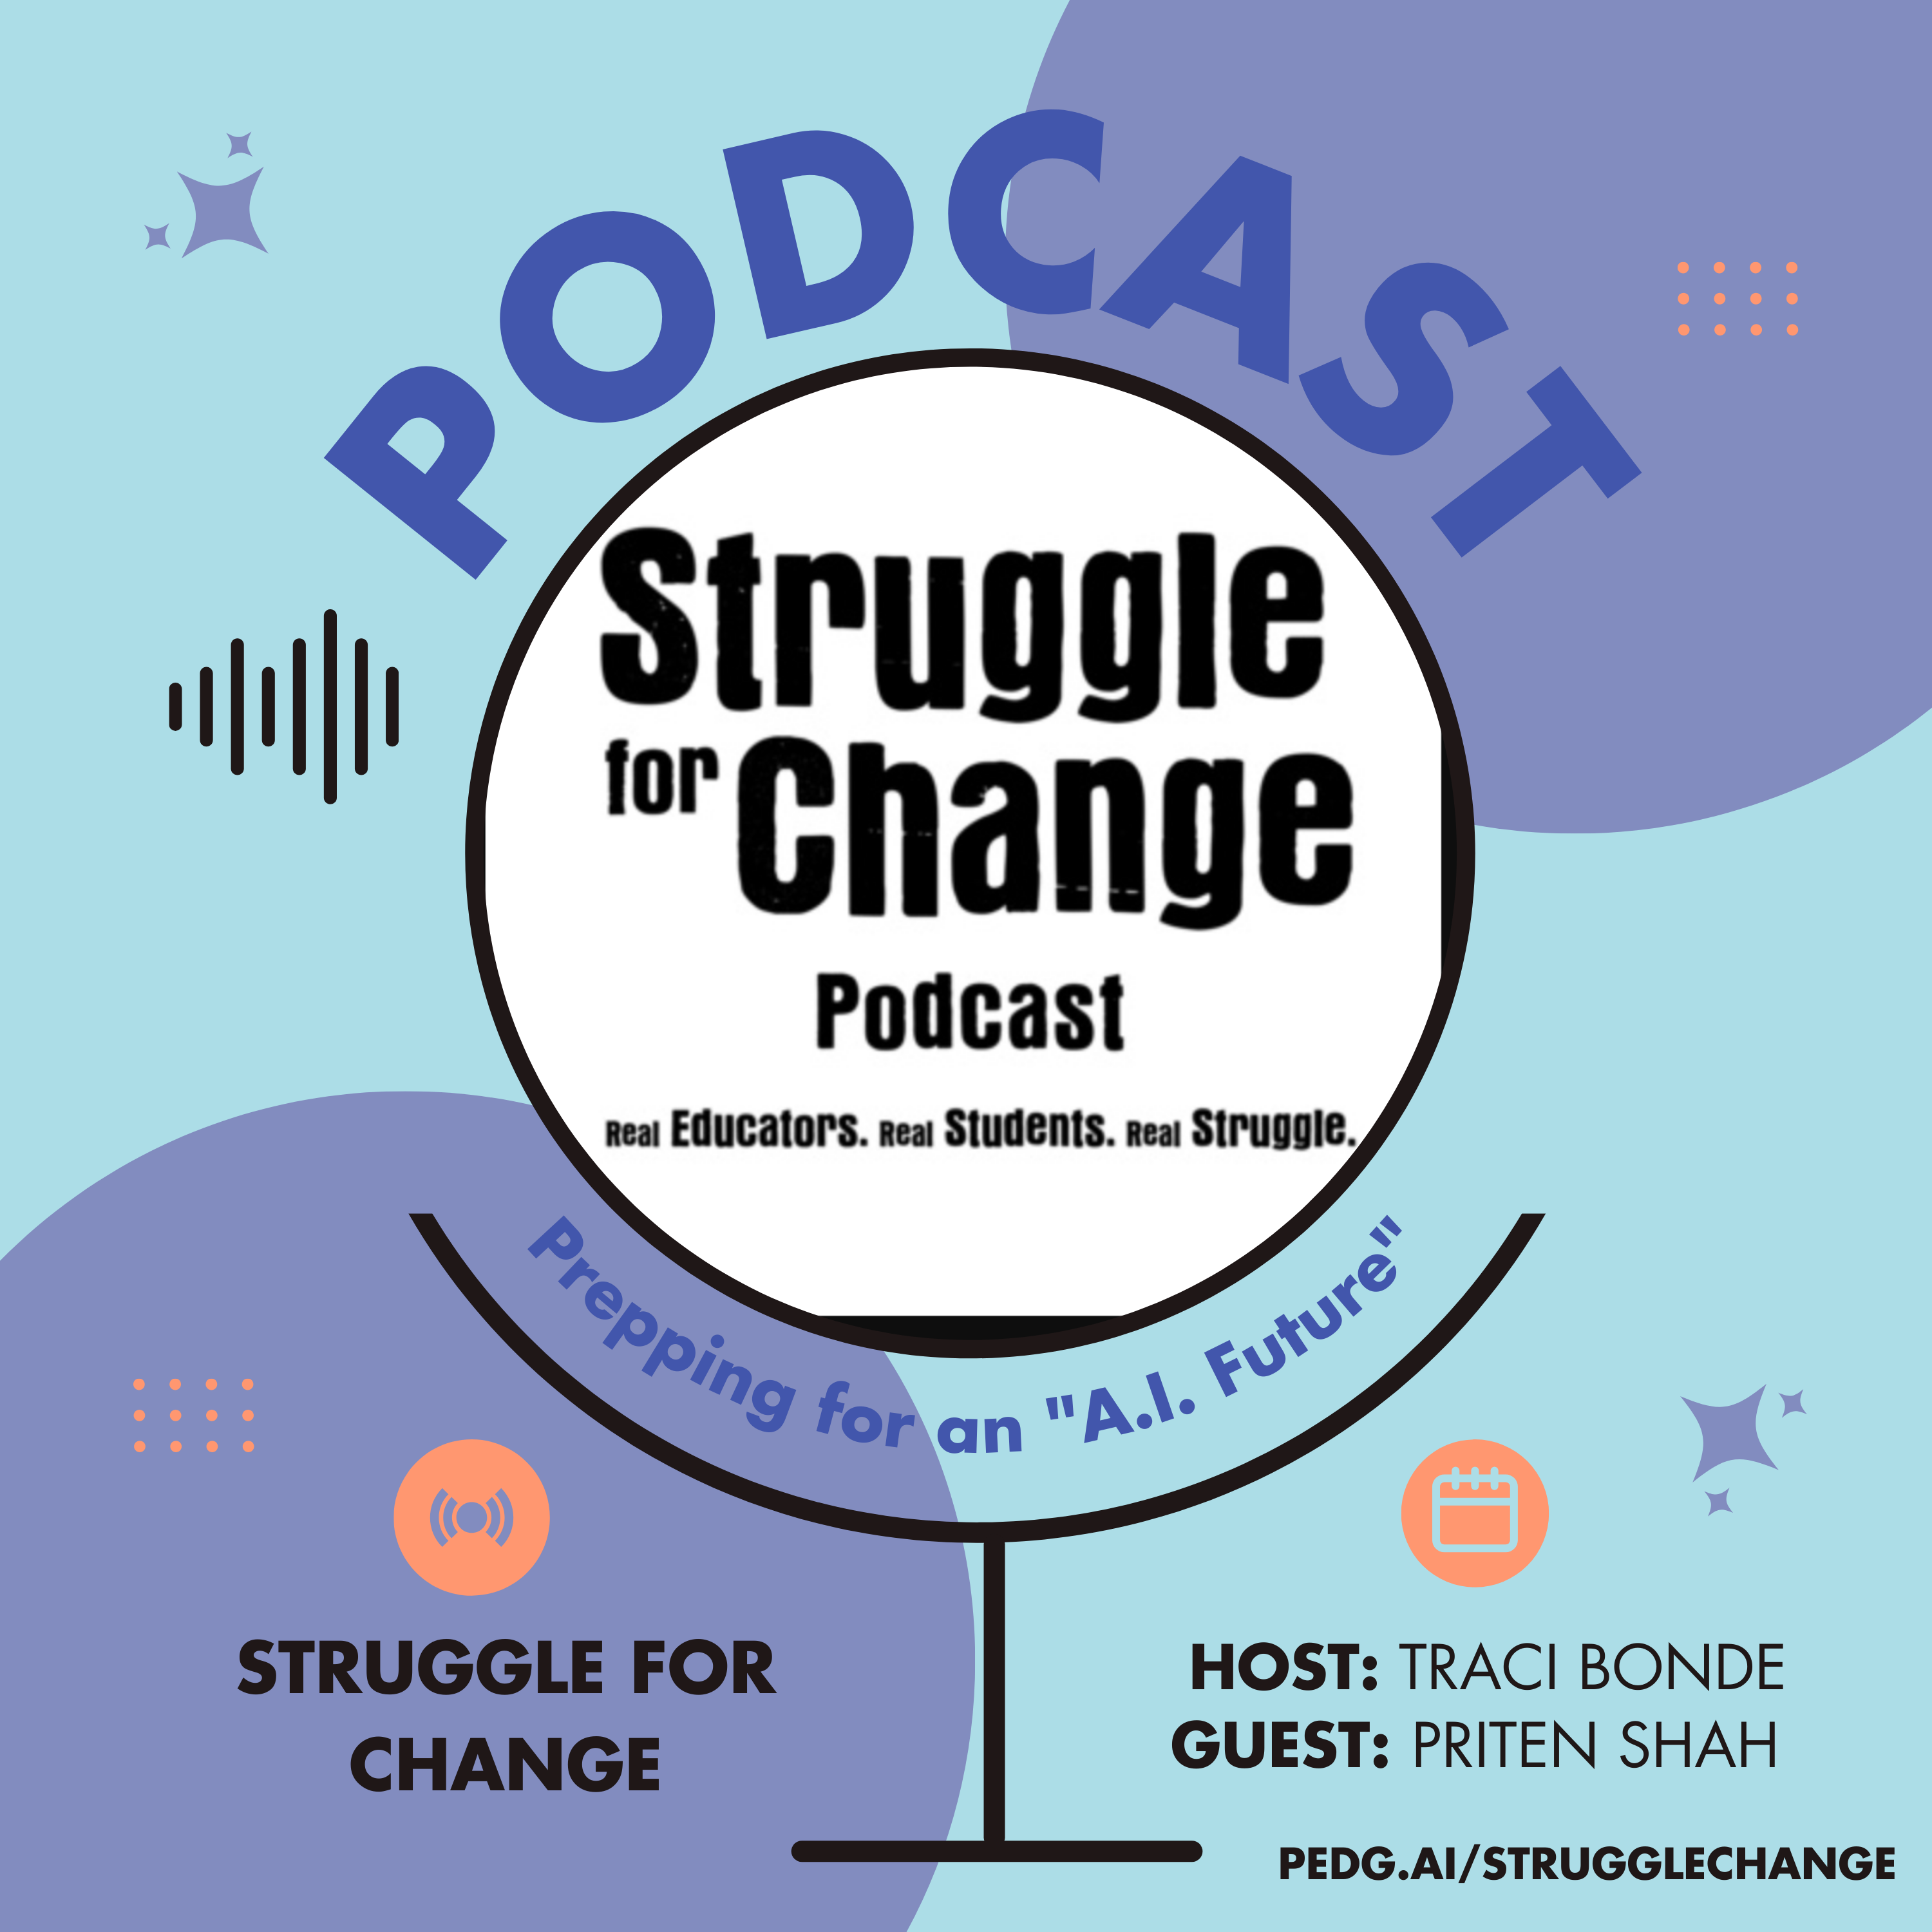 Podcast Struggle for Change